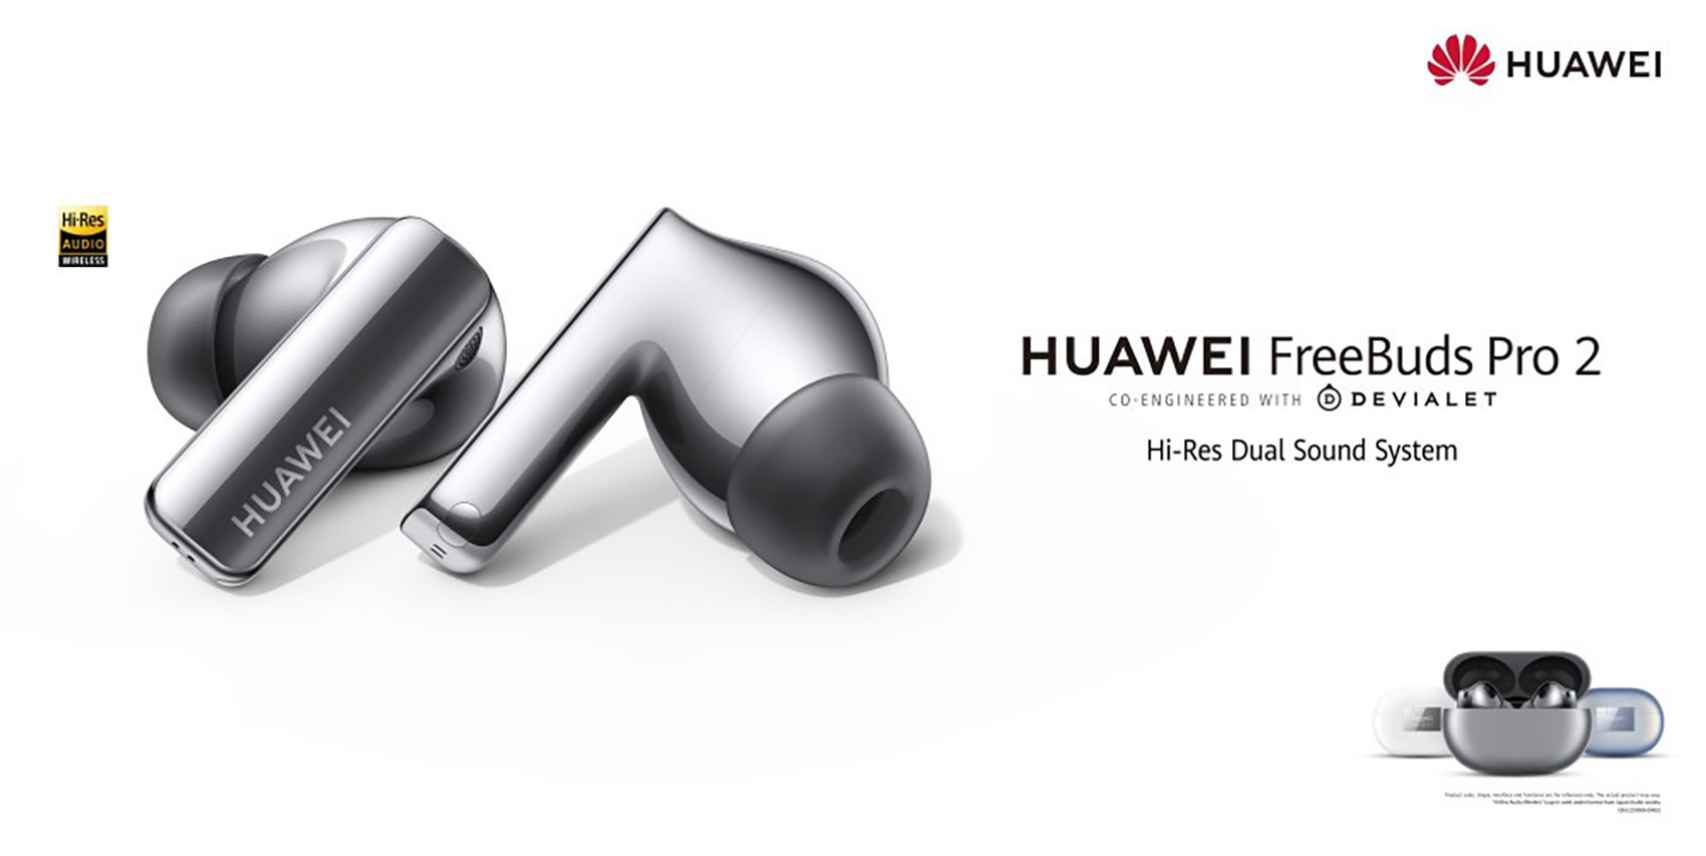 Huawei FreeBuds Pro 2: precio, disponibilidad y principales características